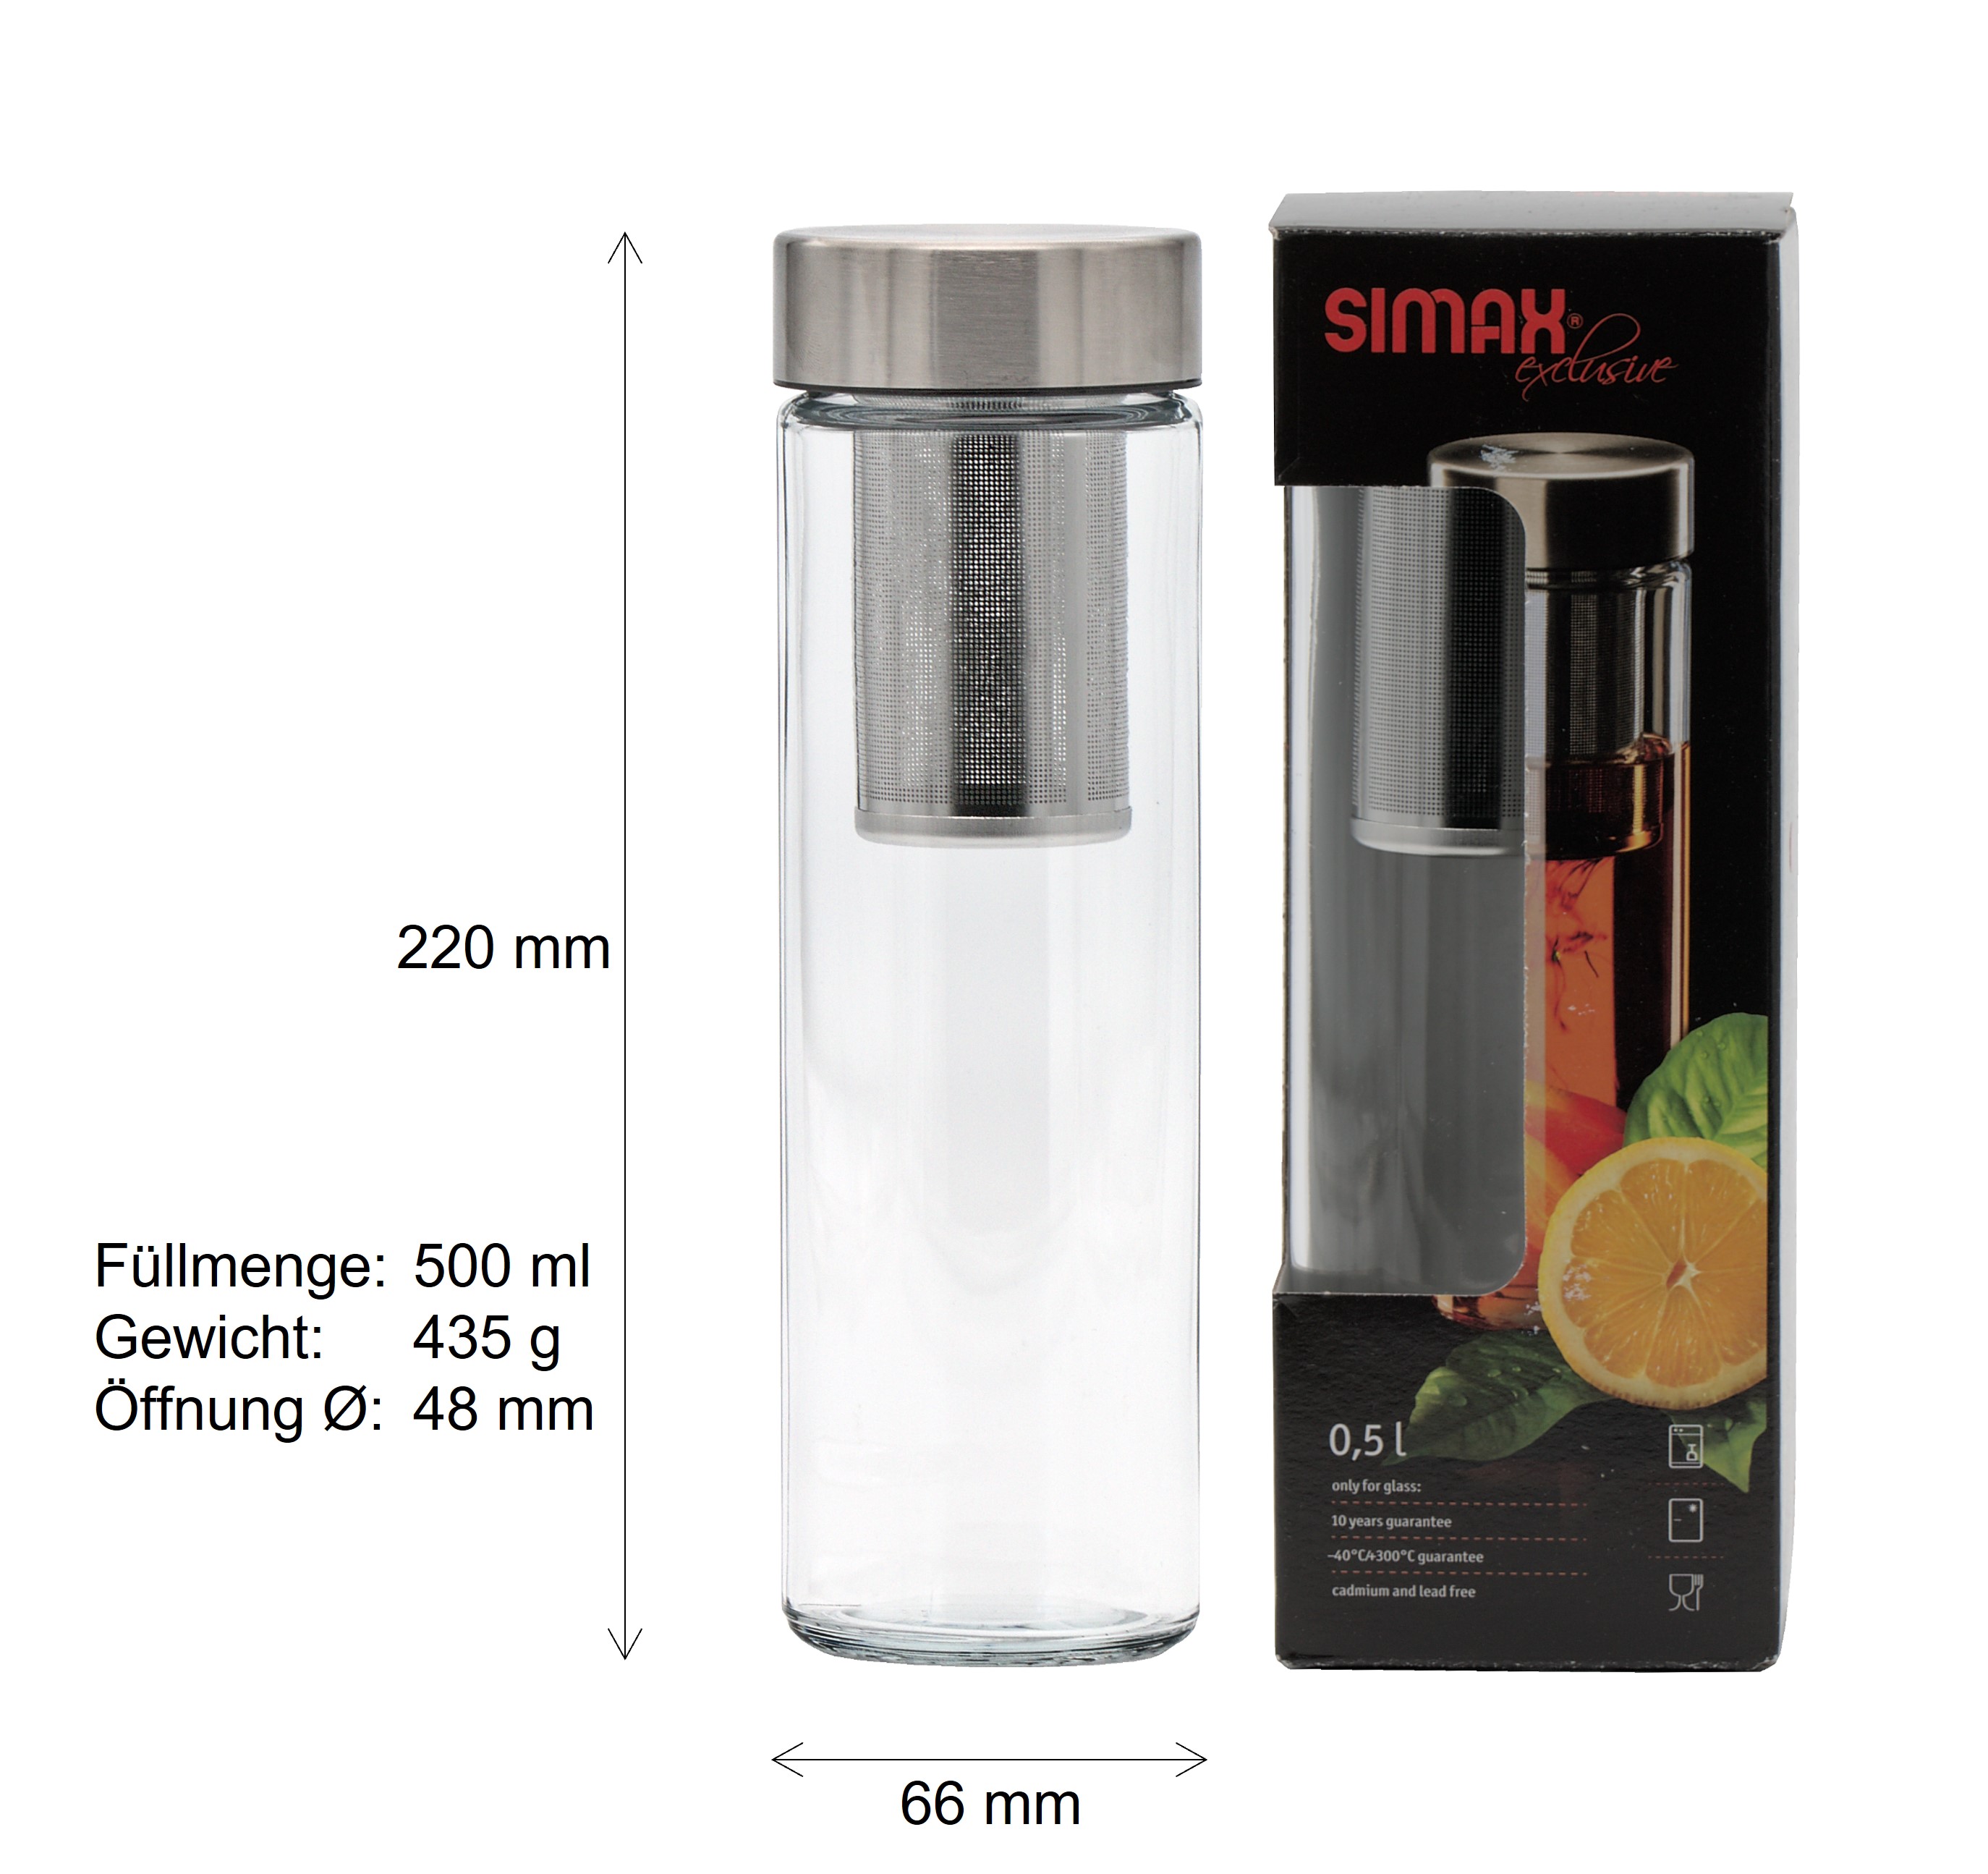 Exklusive SIMAX Trinkflasche aus Borosilikatglas in einfachen zylindrischen Design mit 220 mm Höhe, 435 g Gewicht, 48 mm Öffnung, 66 mm Aussendurchmesser, einem Siebeinsatz und einer Füllmenge von 500 ml